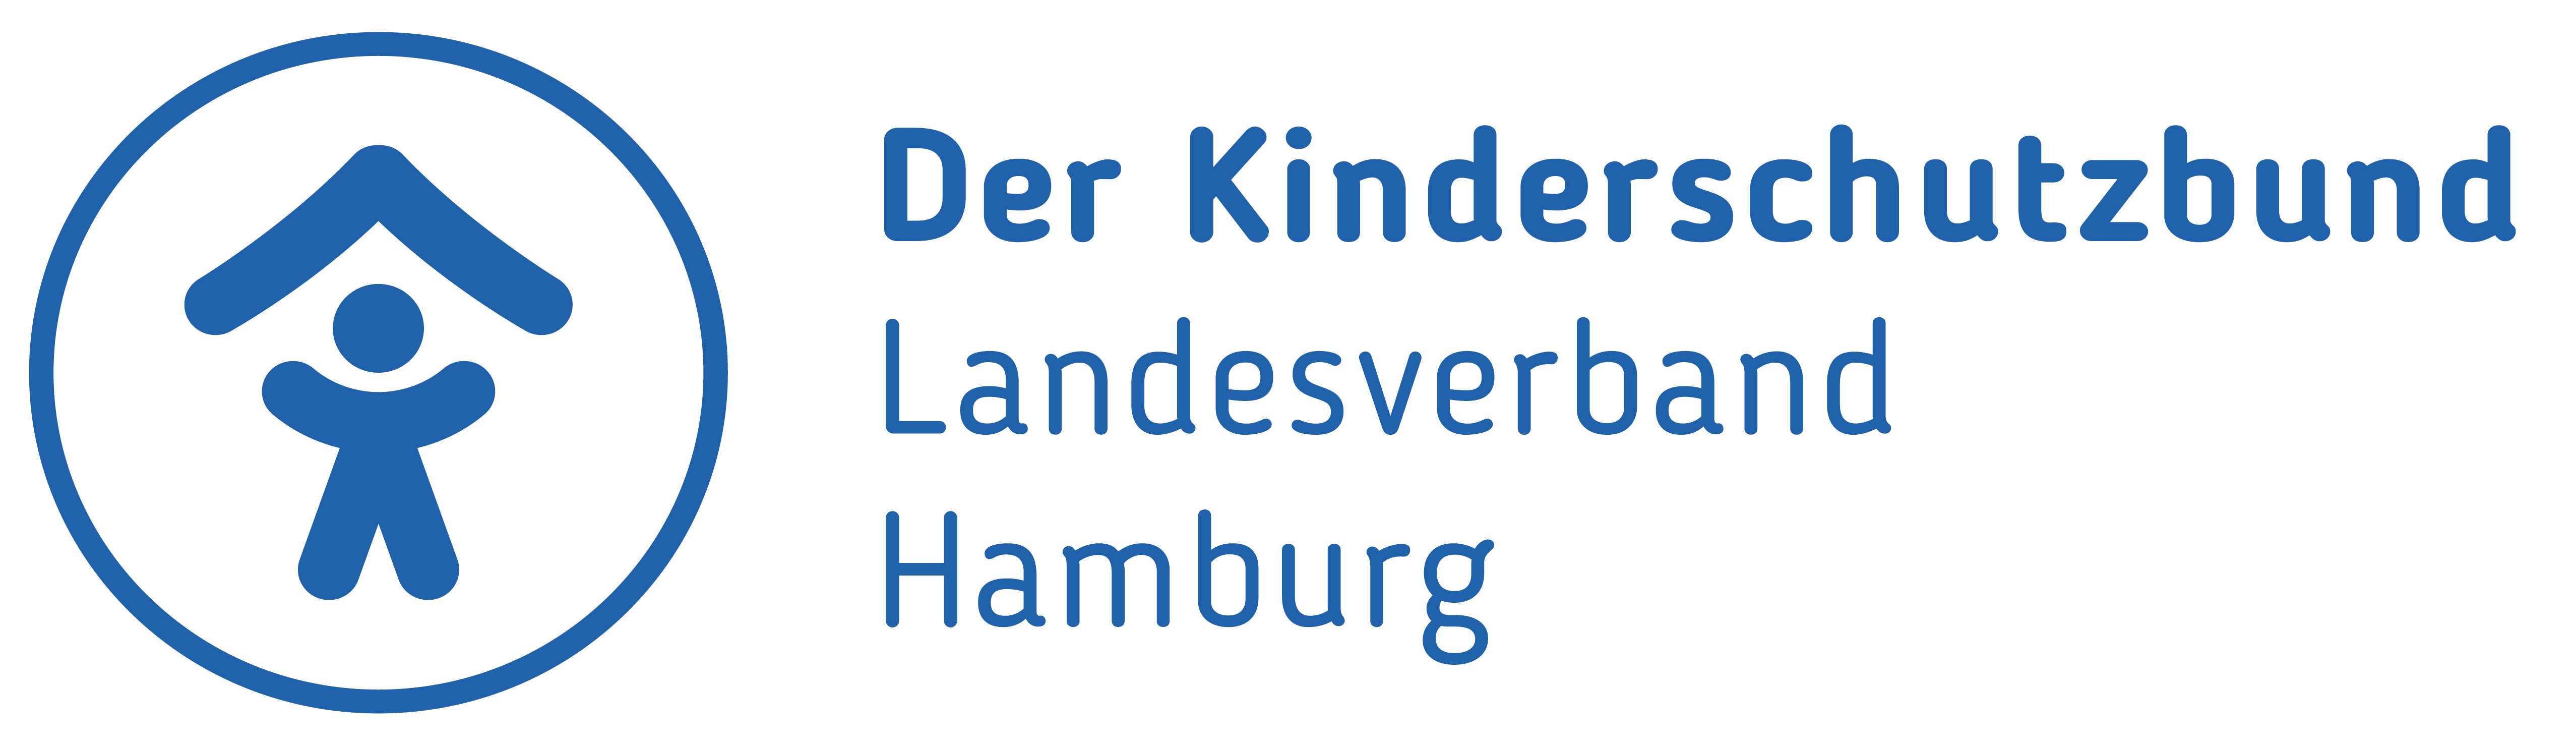 Kinderschutzbund Hamburg